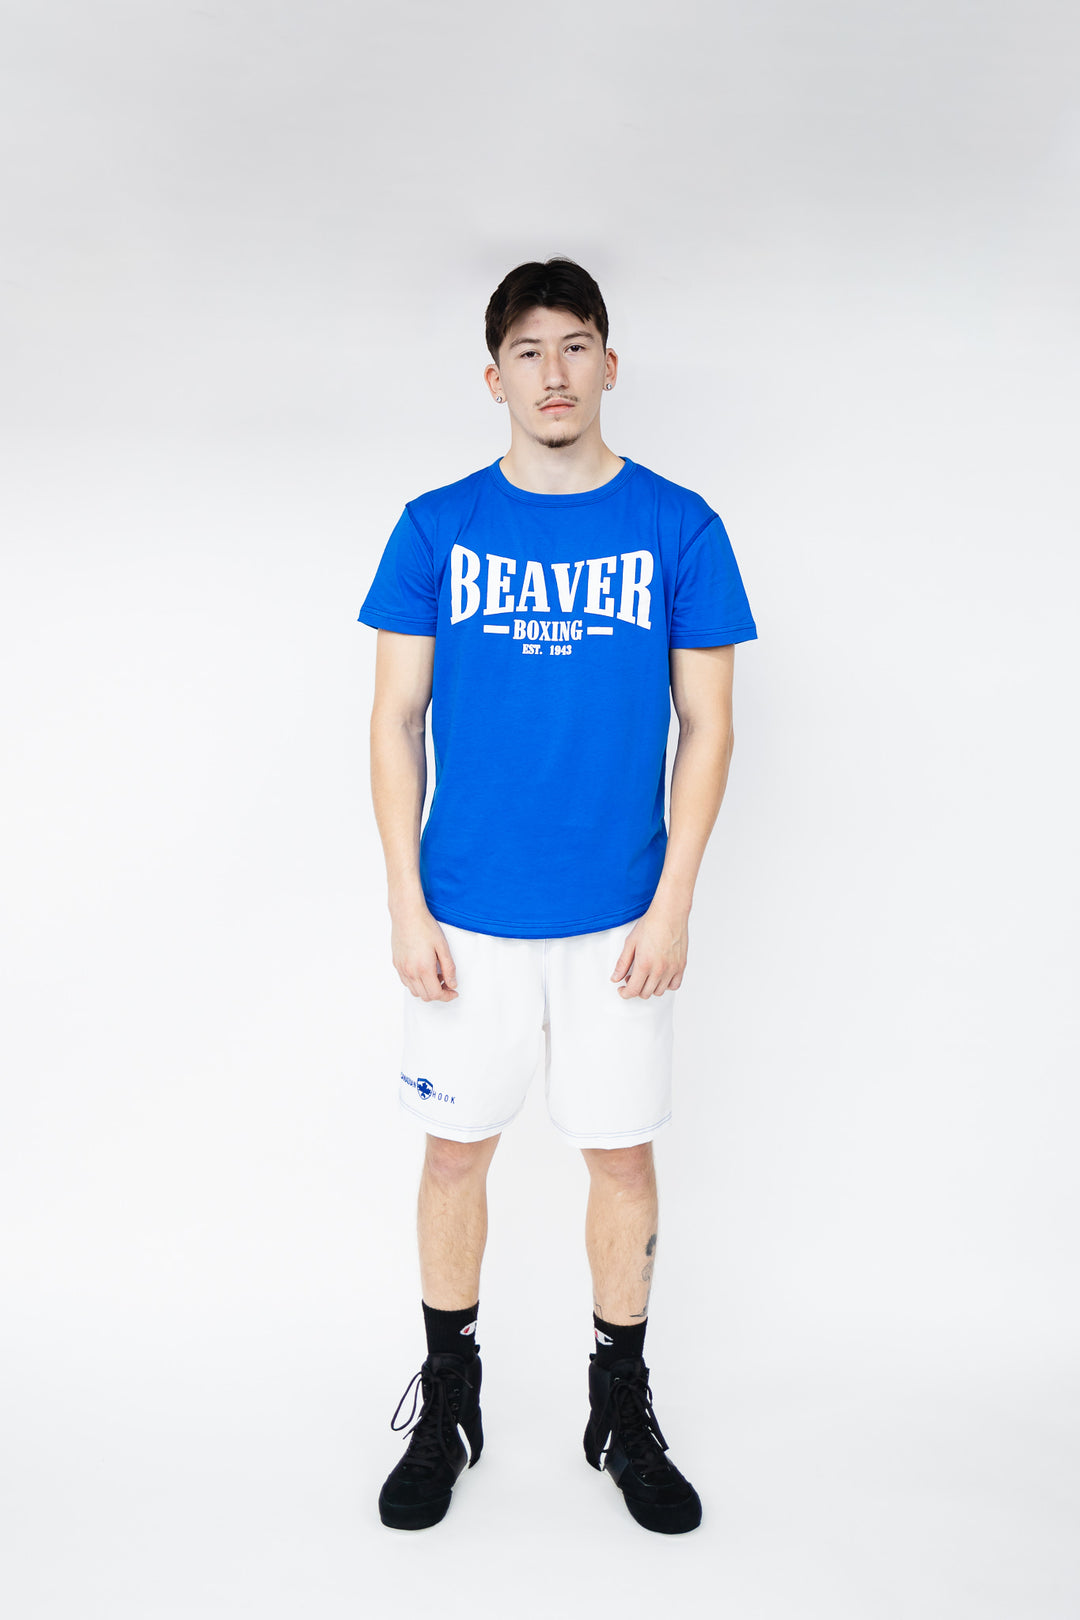 Beaver Boxing T-Shirt EST. 1943 - BLUE